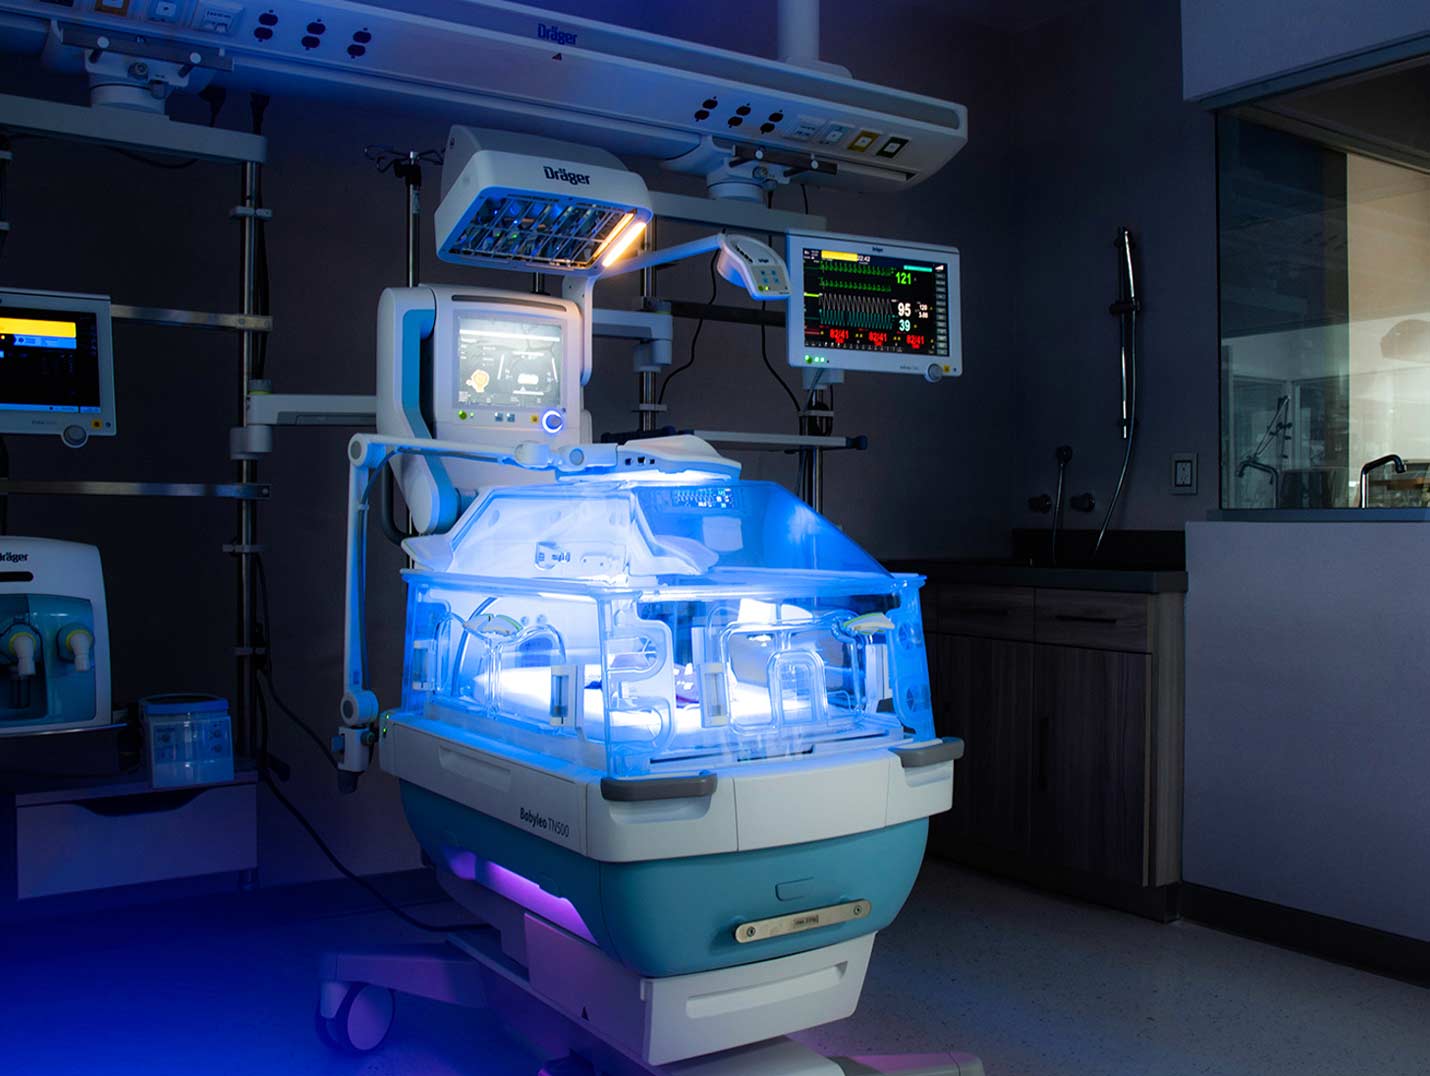 Área de terapia intensiva neonatal con una incubadora de color blanco y azul, alumbrada con luz de color azul